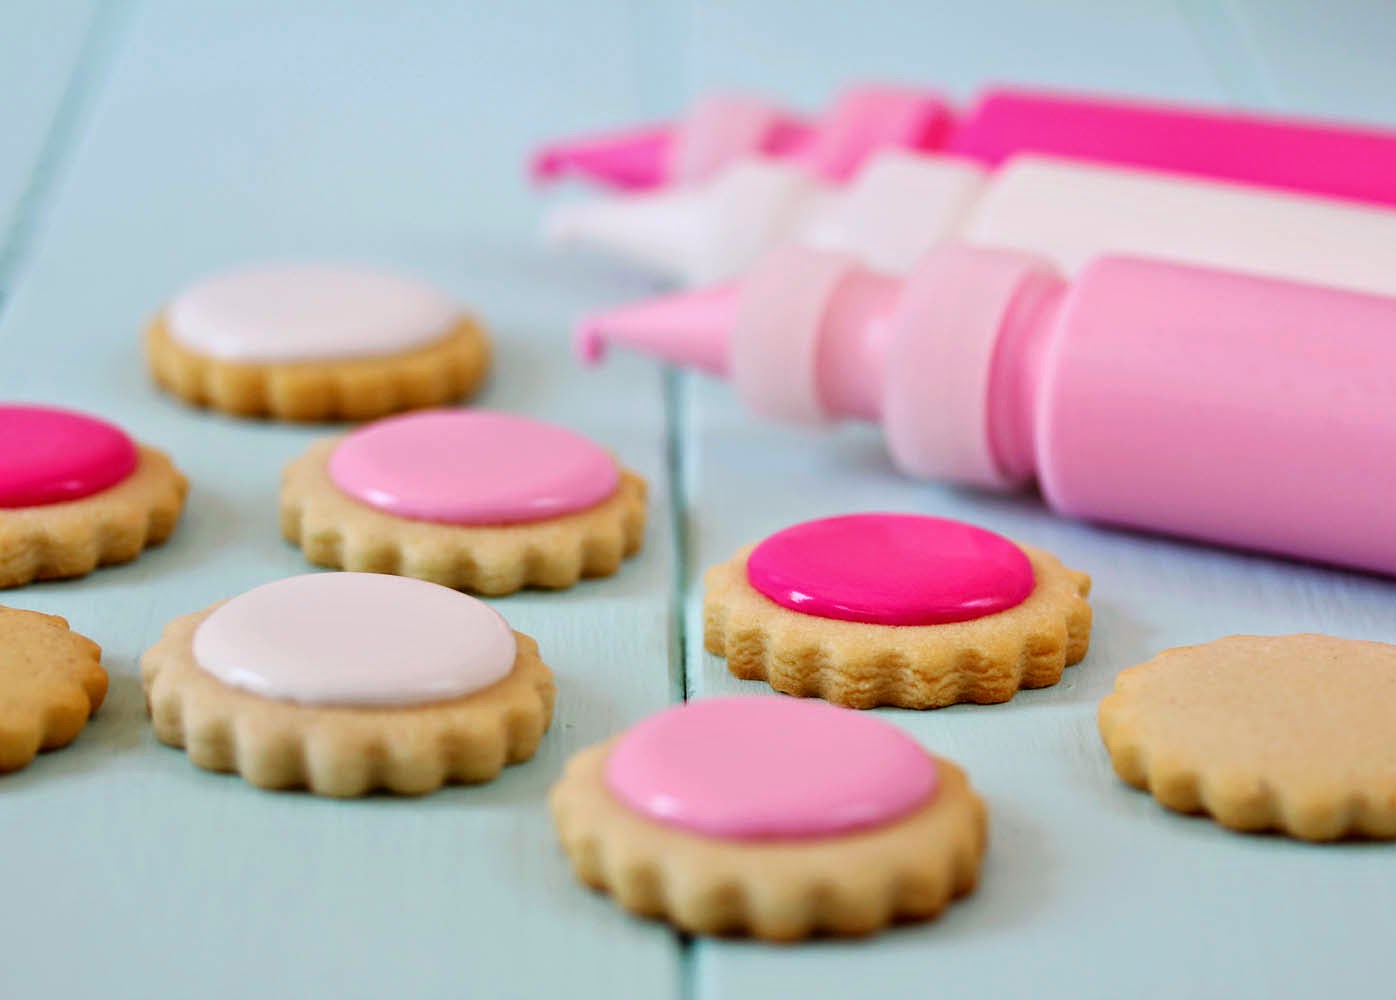 Tutorial: galletas decoradas con moldes de silicona | Postreadicción:  Cursos de pastelería, galletas decoradas, cortadores, papel de azúcar y  mucho más.